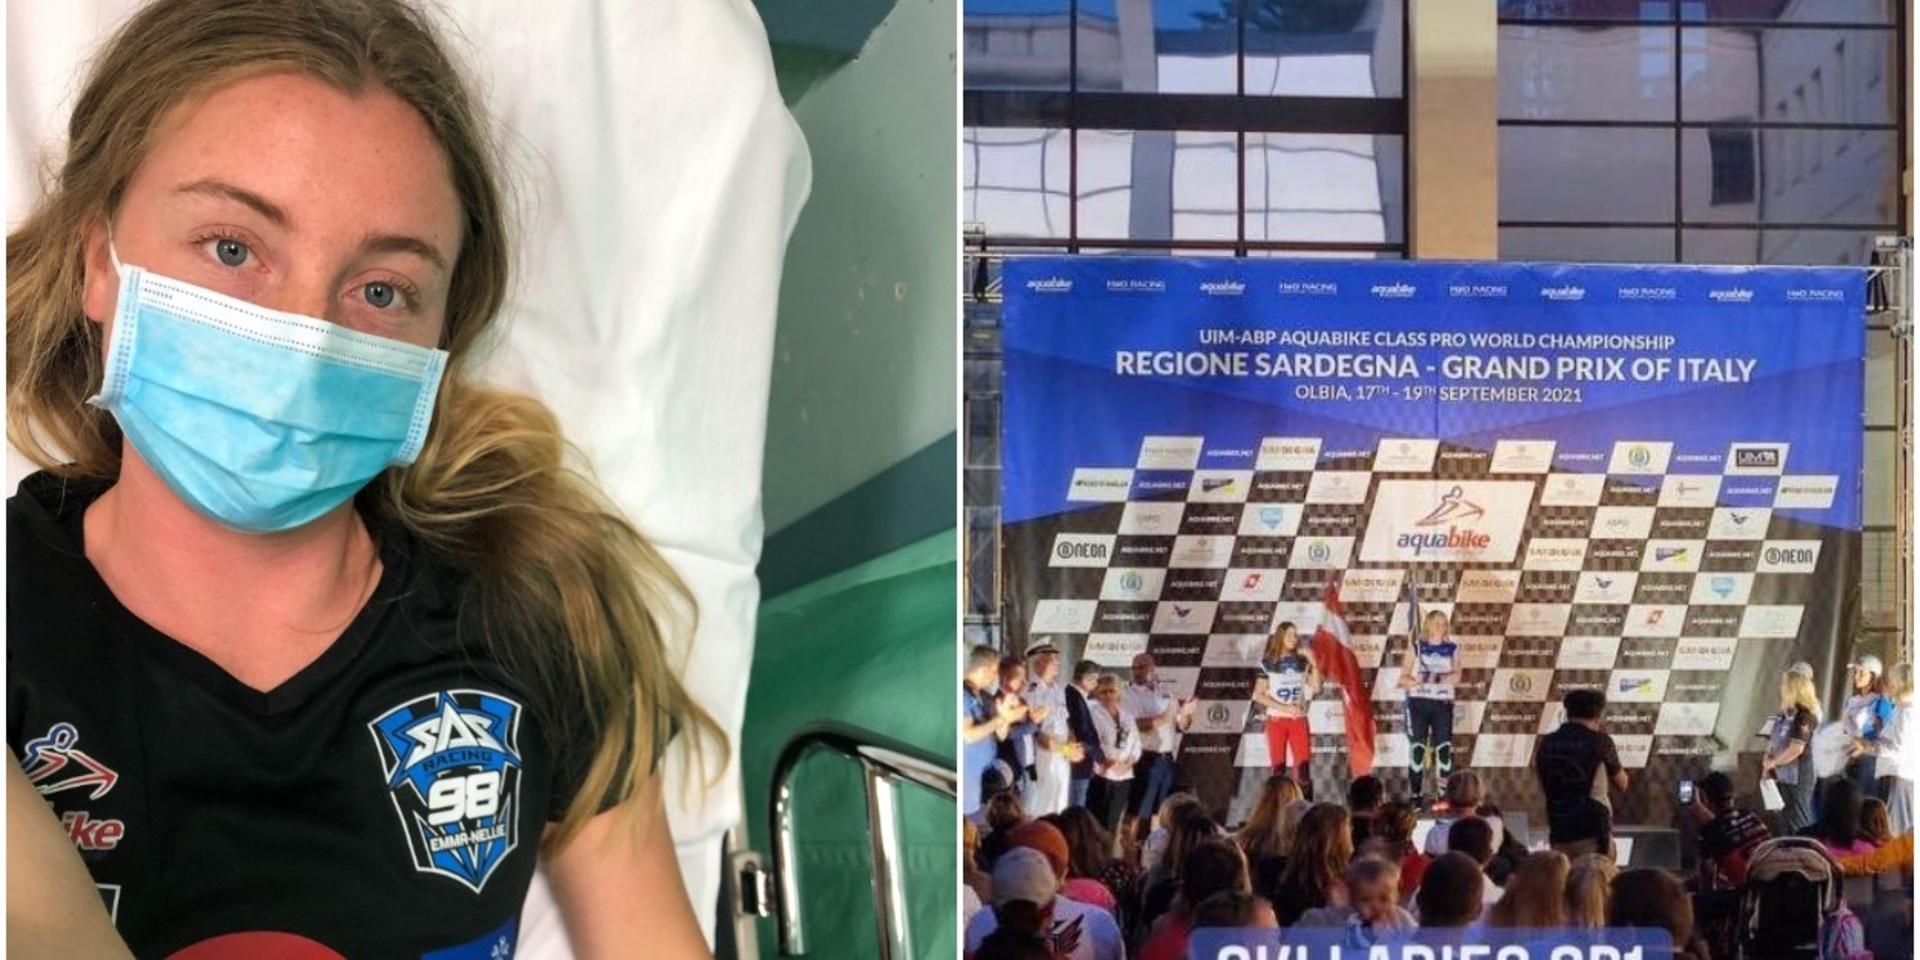 Jetskiåkaren Emma-Nellie Örtendahl från Orust Jetskiklubb fickk tillbringa en kväll på sjukhus i Olbia efter att ha blivit påkörd i ett race i den första VM-deltävlingen i Olbia.